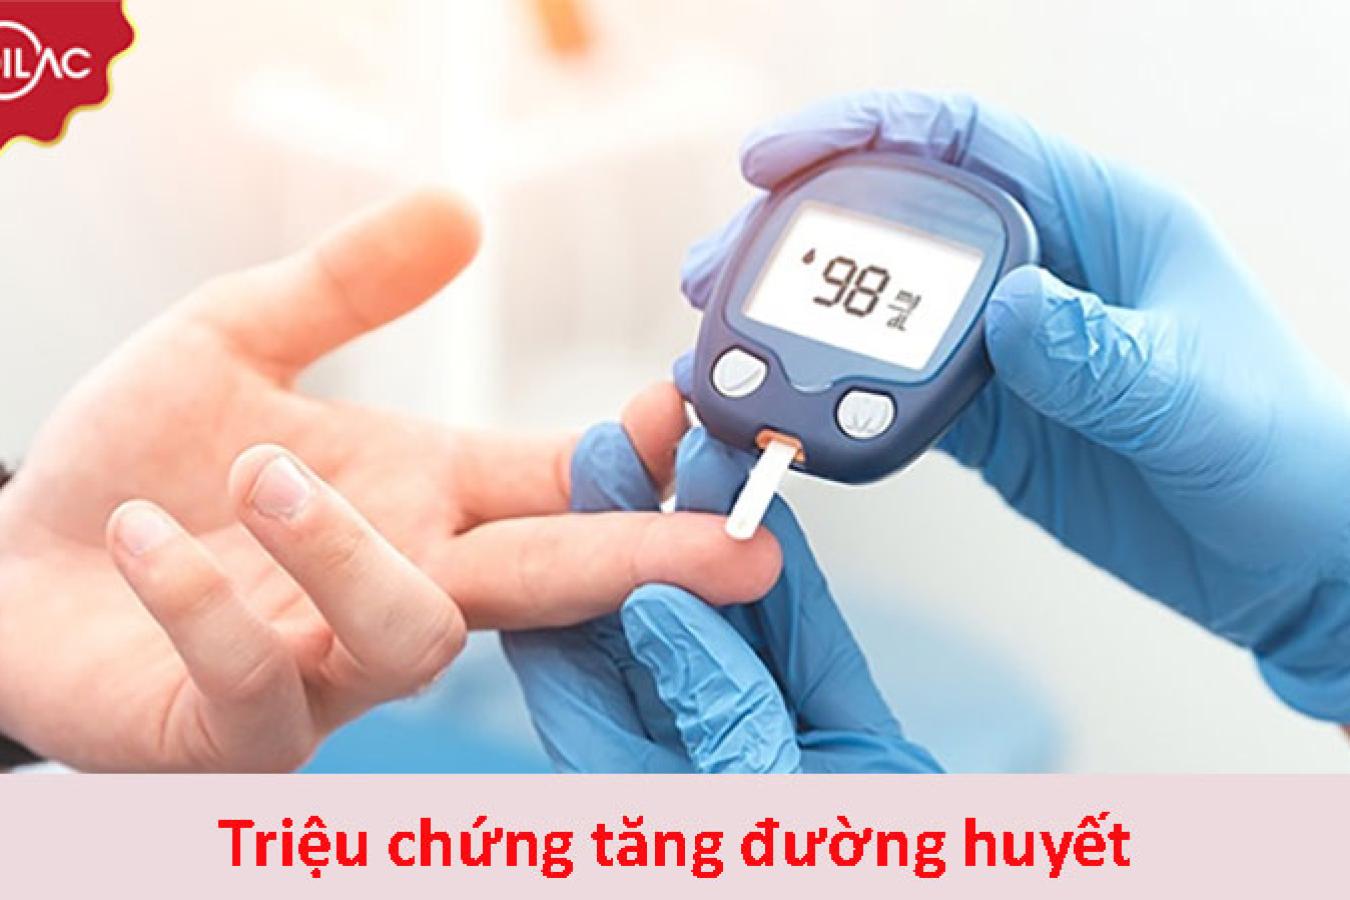 Triệu chứng tăng đường huyết và cách kiểm soát tăng đường huyết